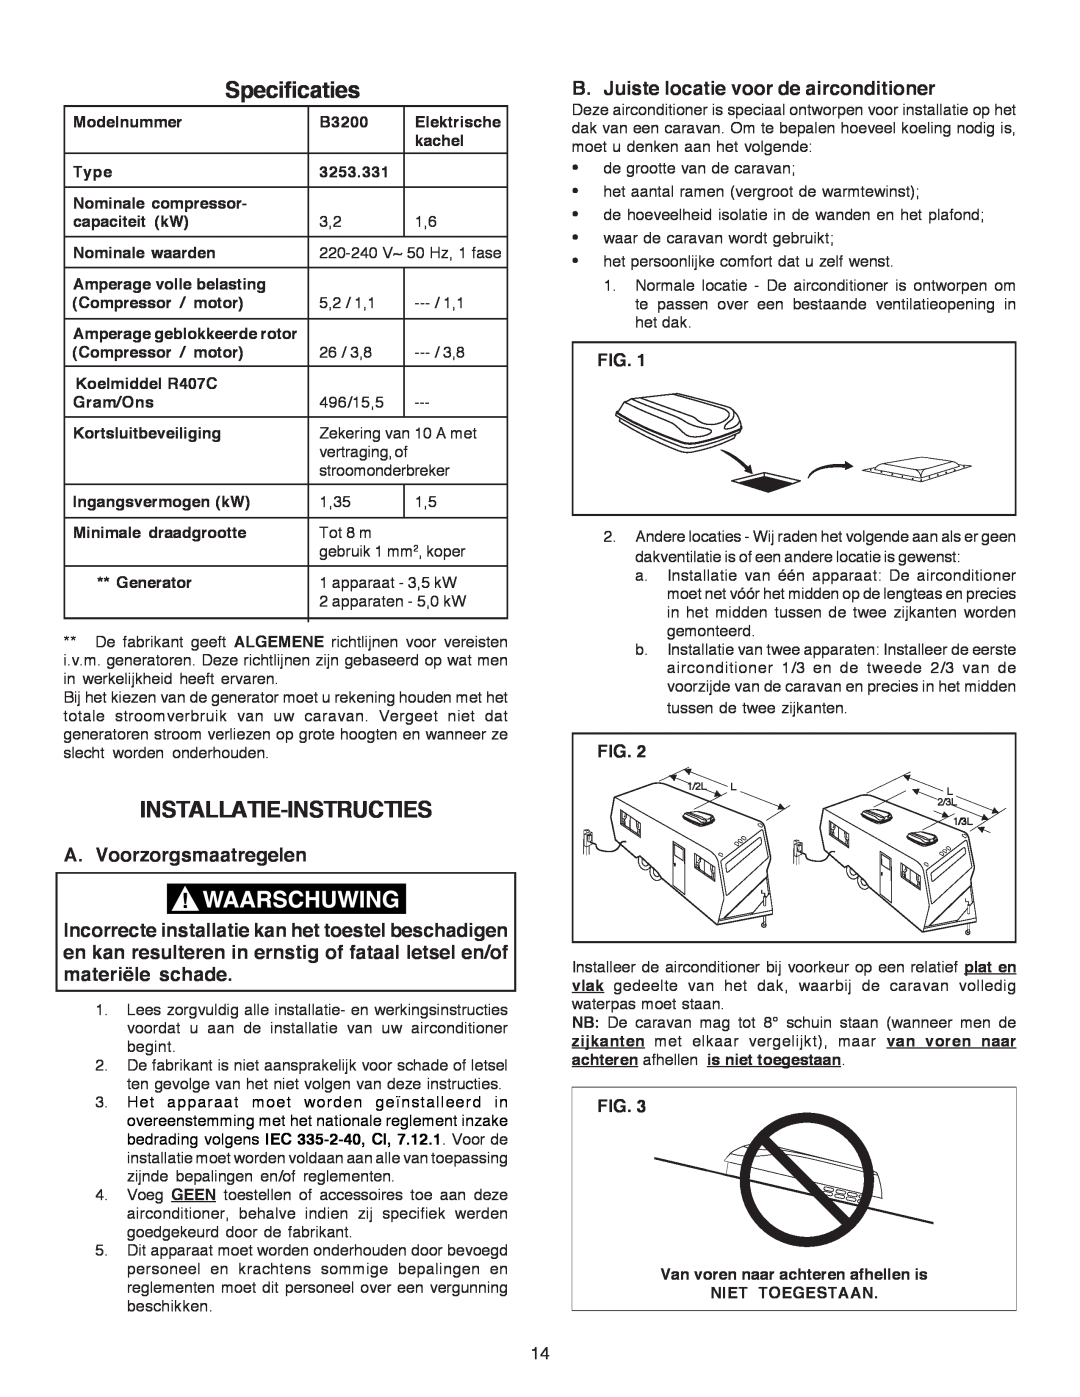 Dometic B3200 Specificaties, Installatie-Instructies, A. Voorzorgsmaatregelen, B. Juiste locatie voor de airconditioner 